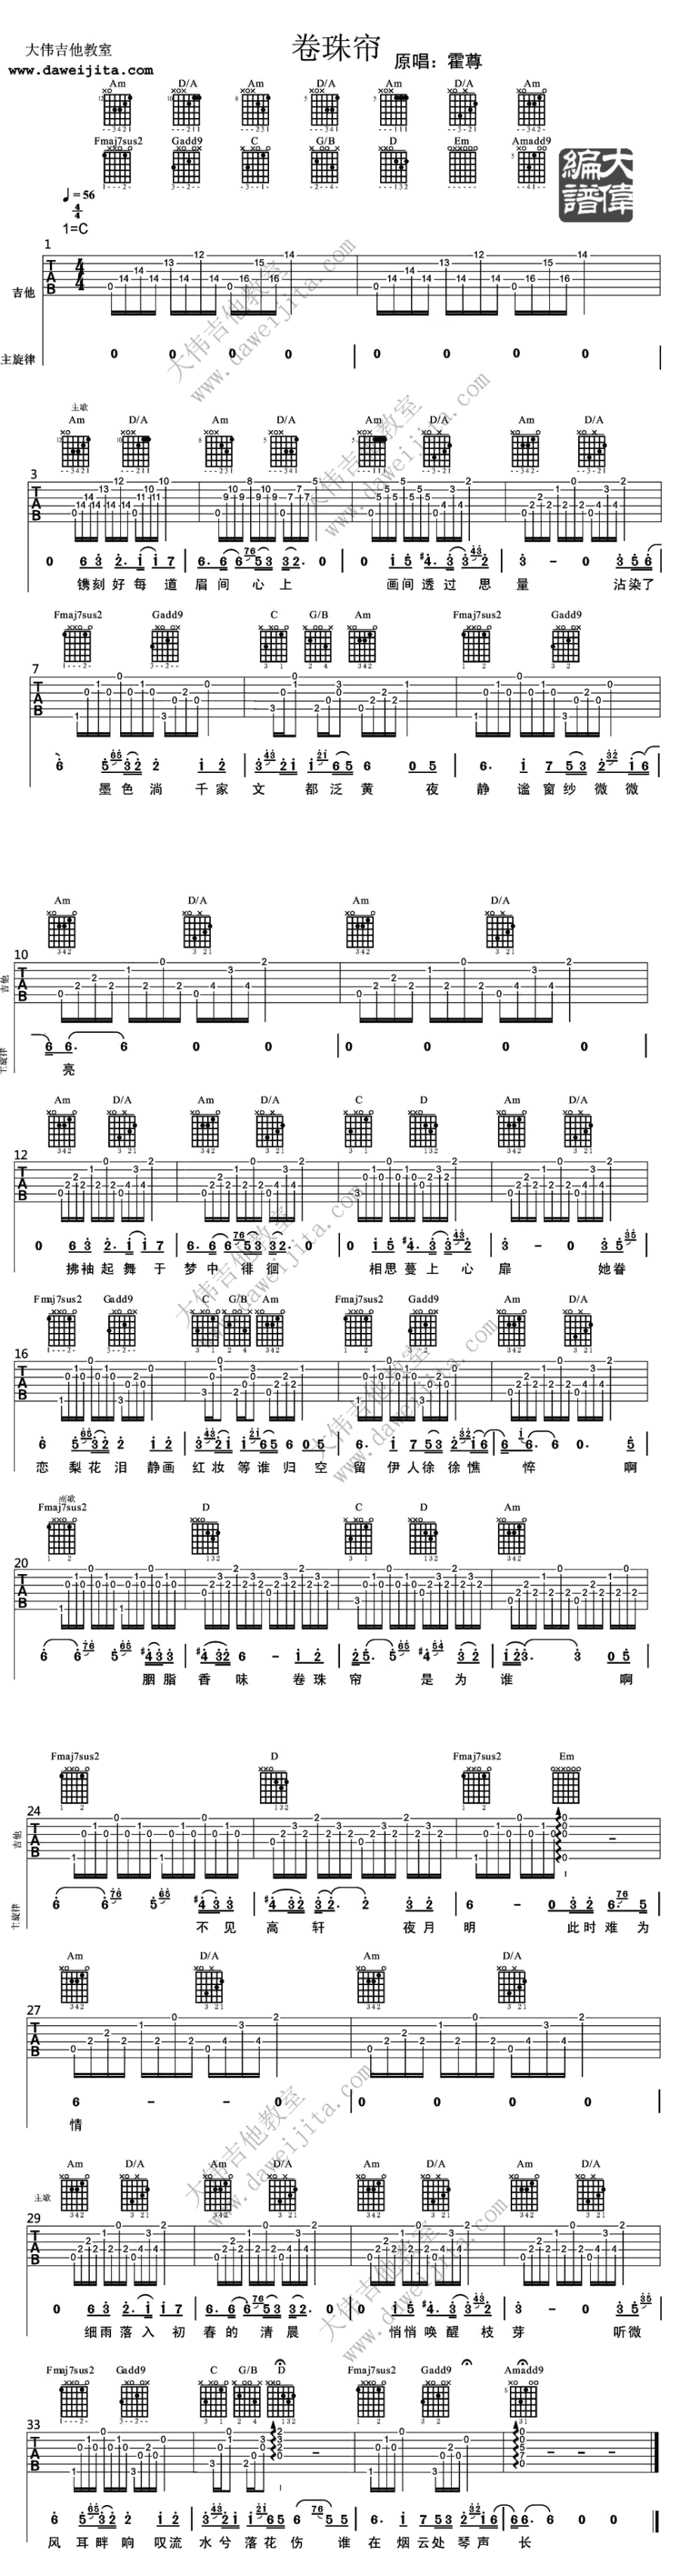 卷珠簾 / 卷珠簾 (ver.2) 霍尊 圖片吉他譜